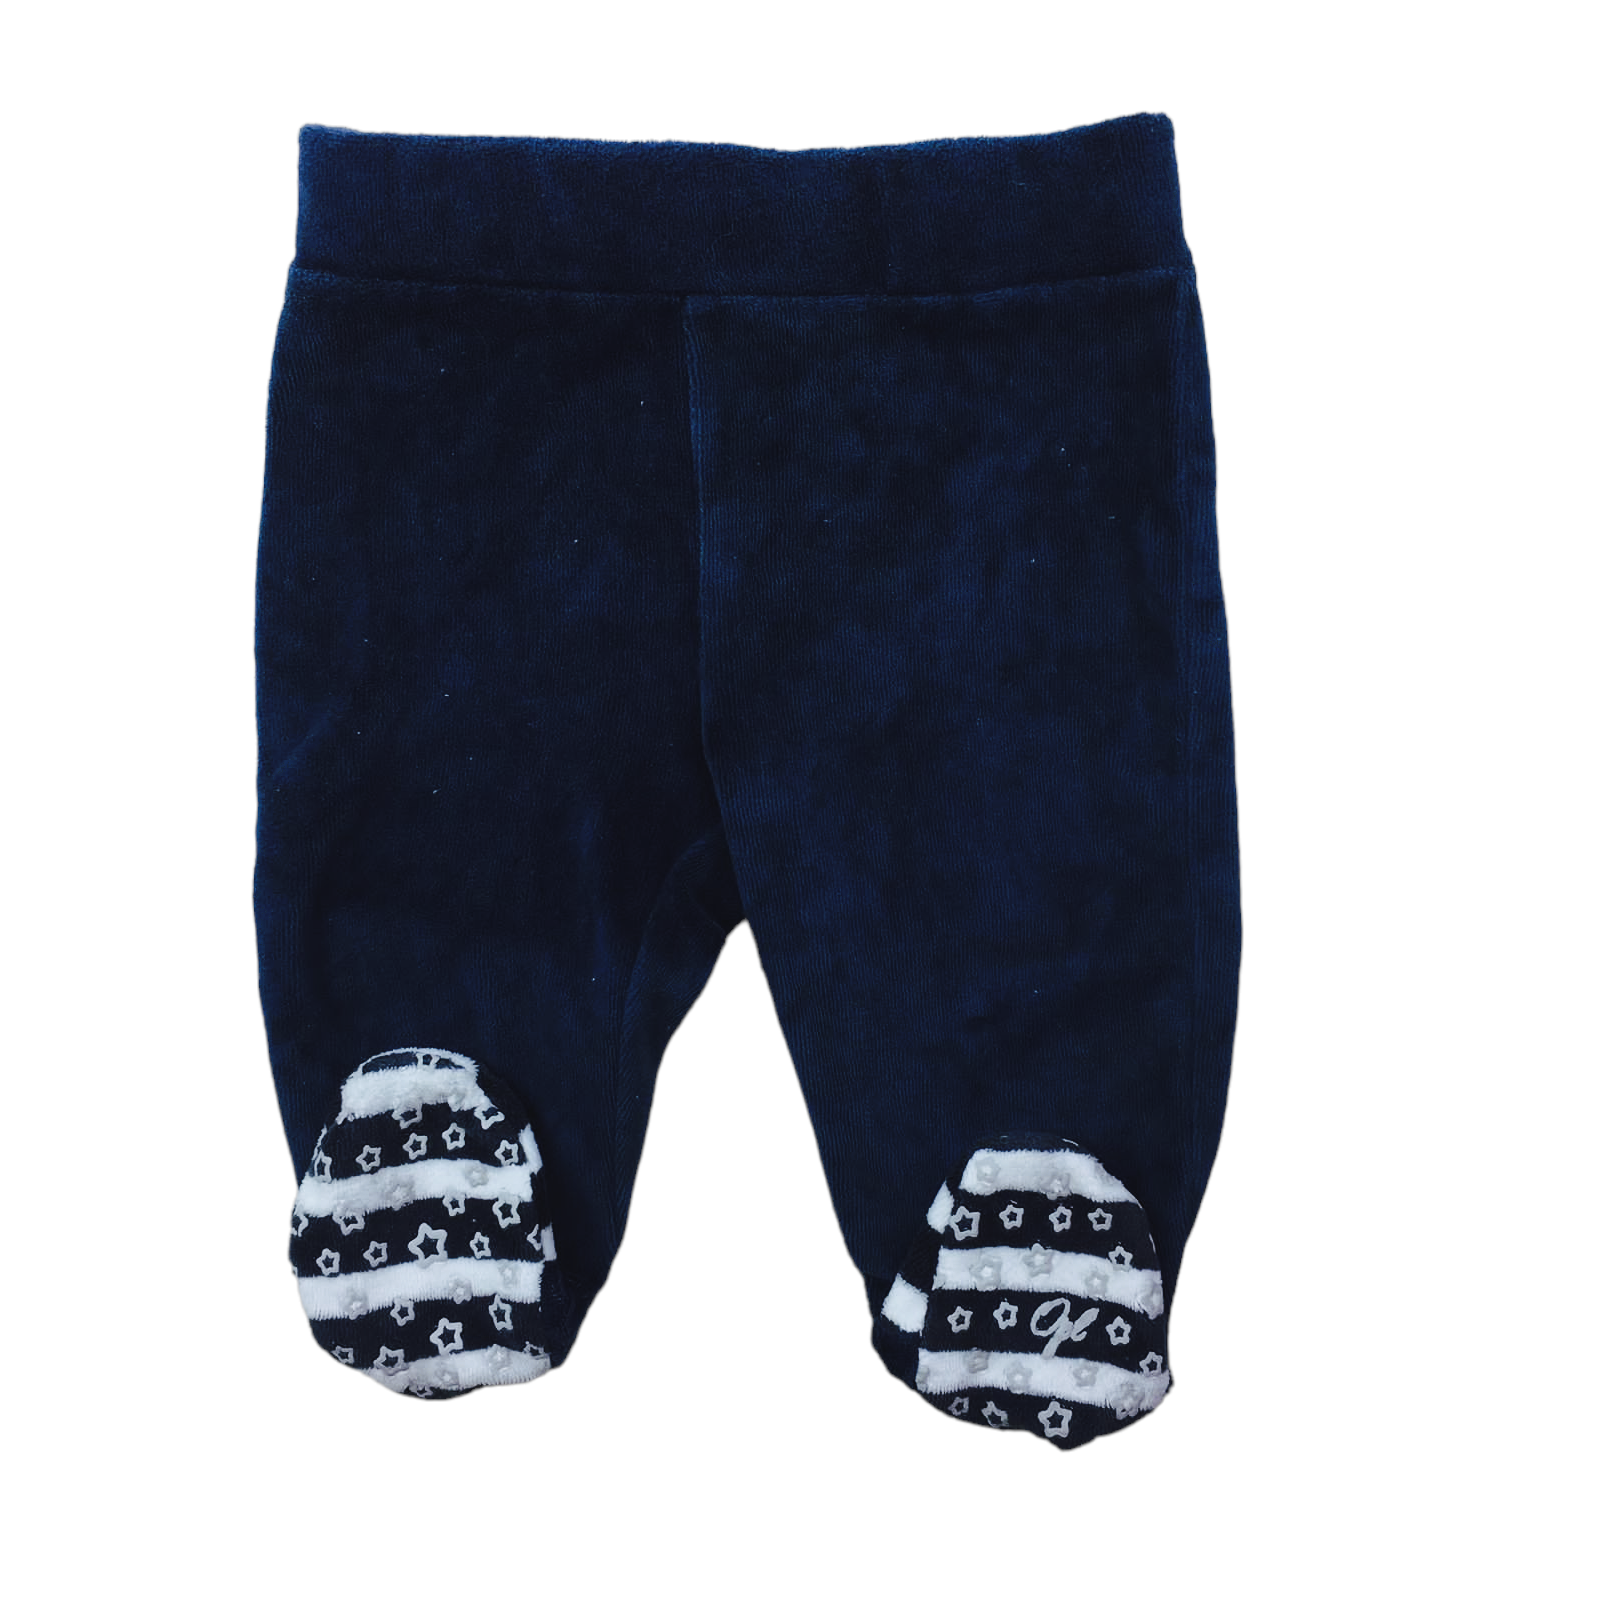 Panty de plush azul con detalles en blanco y negro